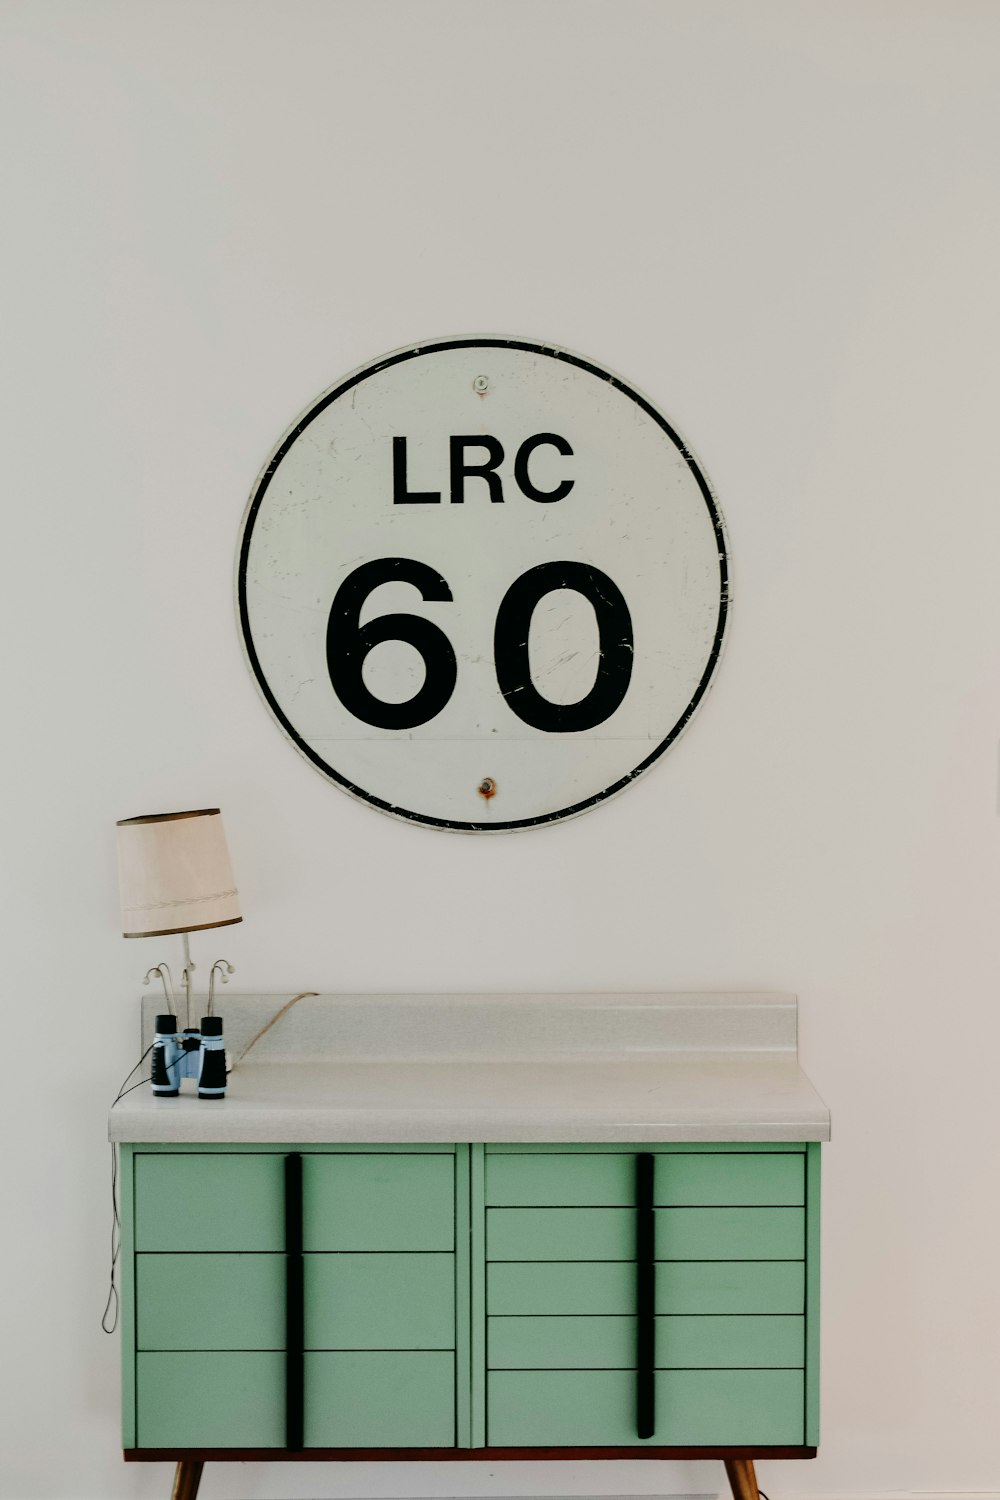 LRC 60の壁の看板の近くに茶色のランプシェードが付いた白と緑の木製デスク